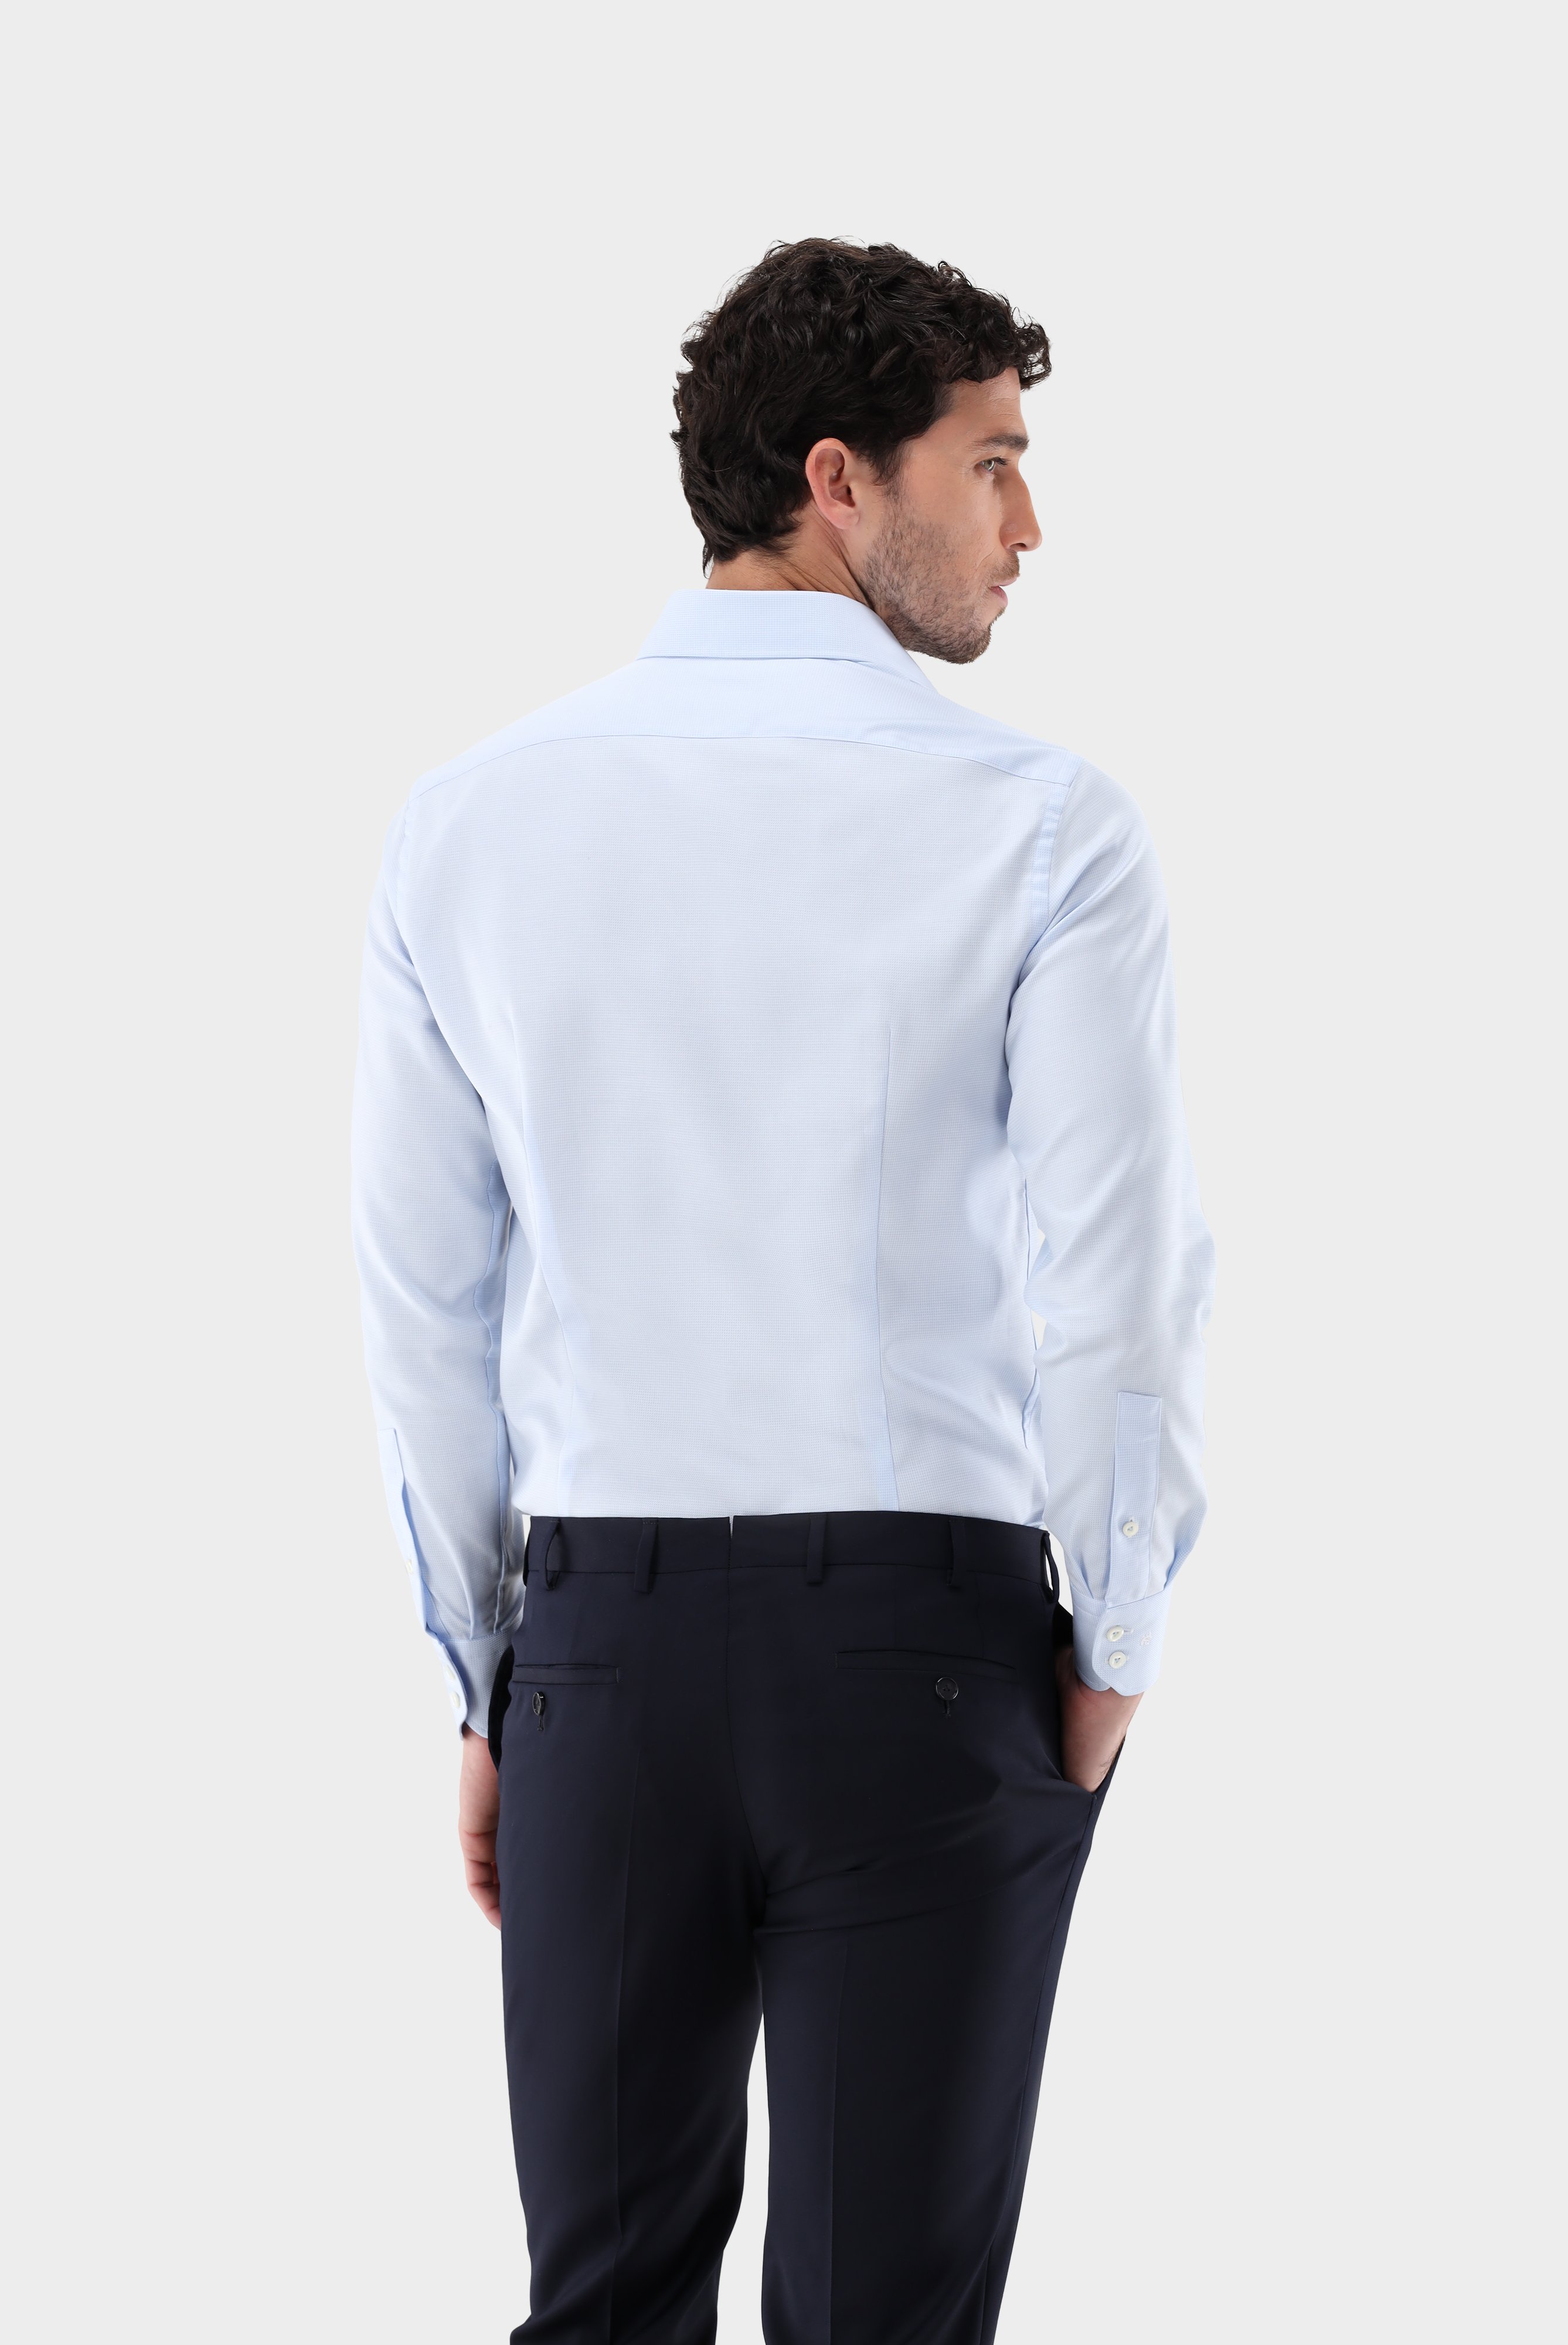 Business Hemden+Twill Hemd mit Struktur Tailor Fit+20.2020.AV.161265.710.38